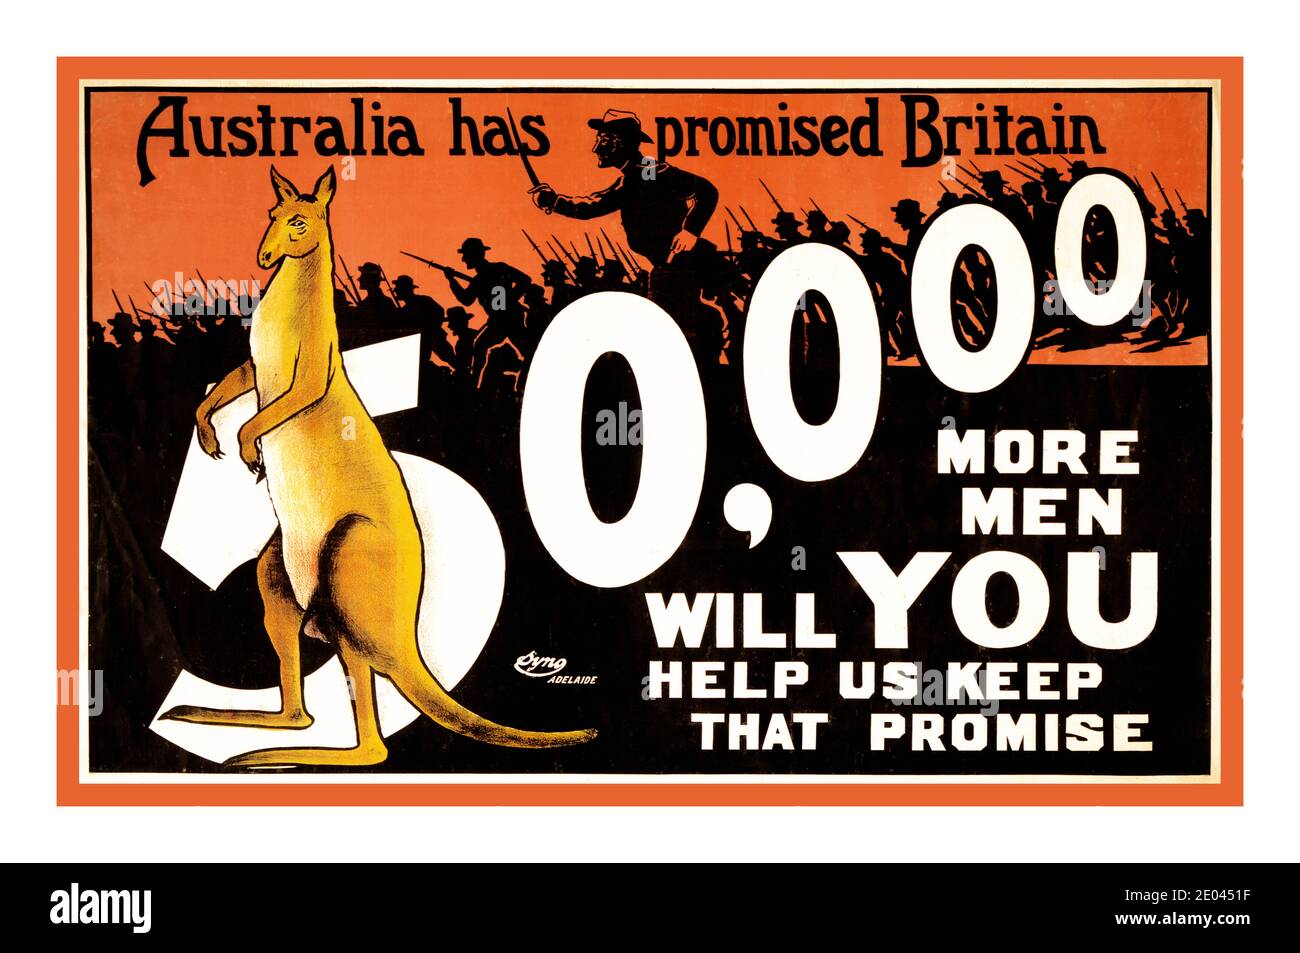 Archivio WW1 Recruitment Poster Australia 1914 "l'Australia ha promesso alla Gran Bretagna 50000 uomini in più; ci aiuterà a mantenere quella promessa" Poster mostra un canguro davanti al numero 50,000 e in background silhouette di soldati in battaglia. Adelaide 1915 Guerra Mondiale, 1914-1918--Recruiting & Enlistment--Australia Canguri--Australia--1910 -1920 soldati australiani--1910 -1920 litografie--colore--1910-1920. Poster di guerra--Australian--1910-1920. Foto Stock